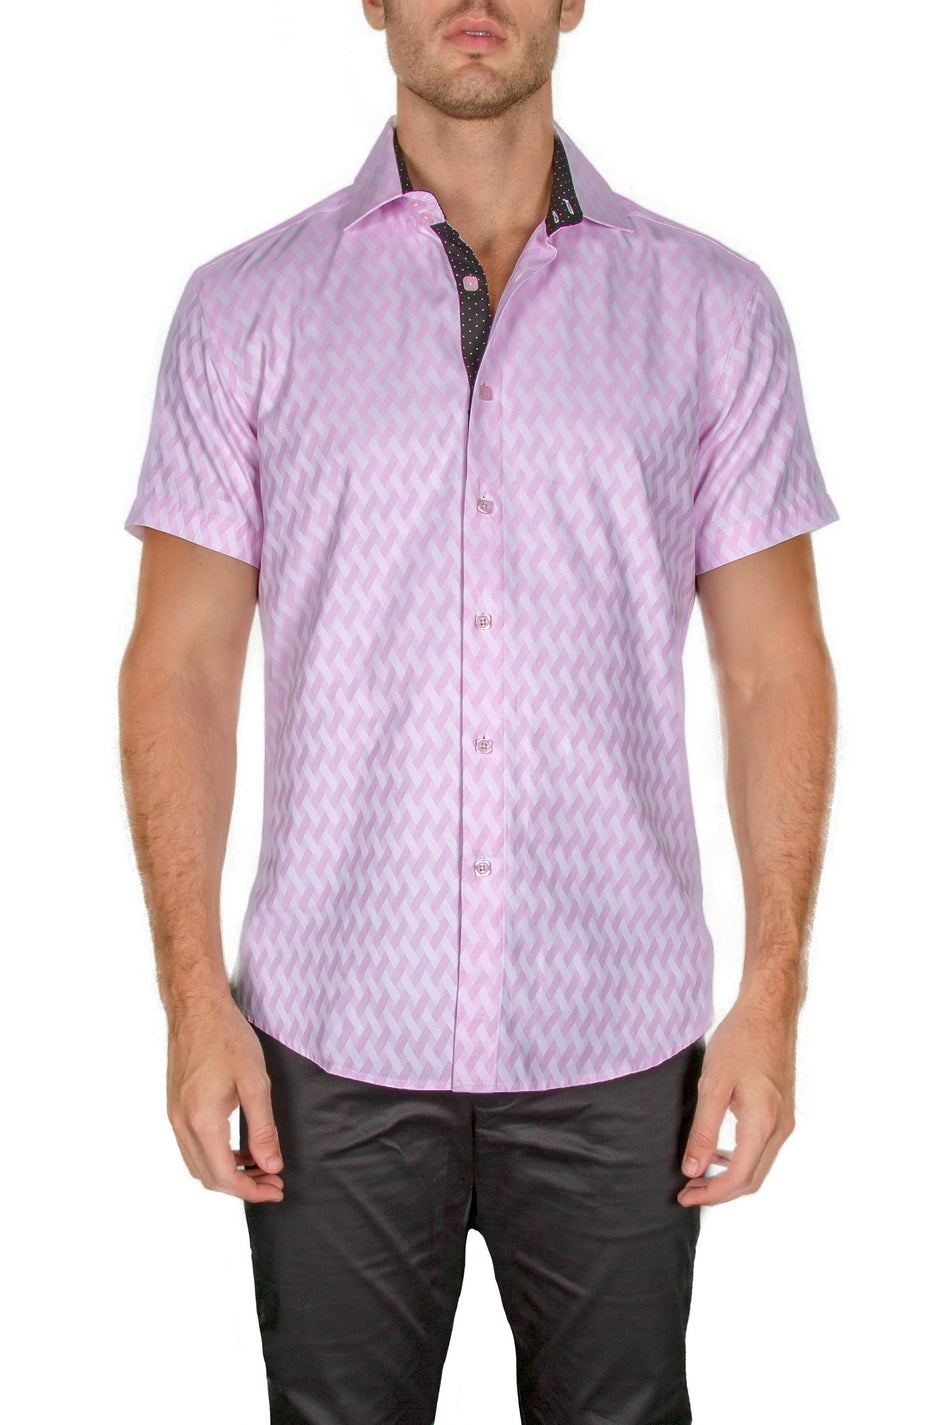 182158-mens-pink-button-up-short-sleeve-dress-shirt